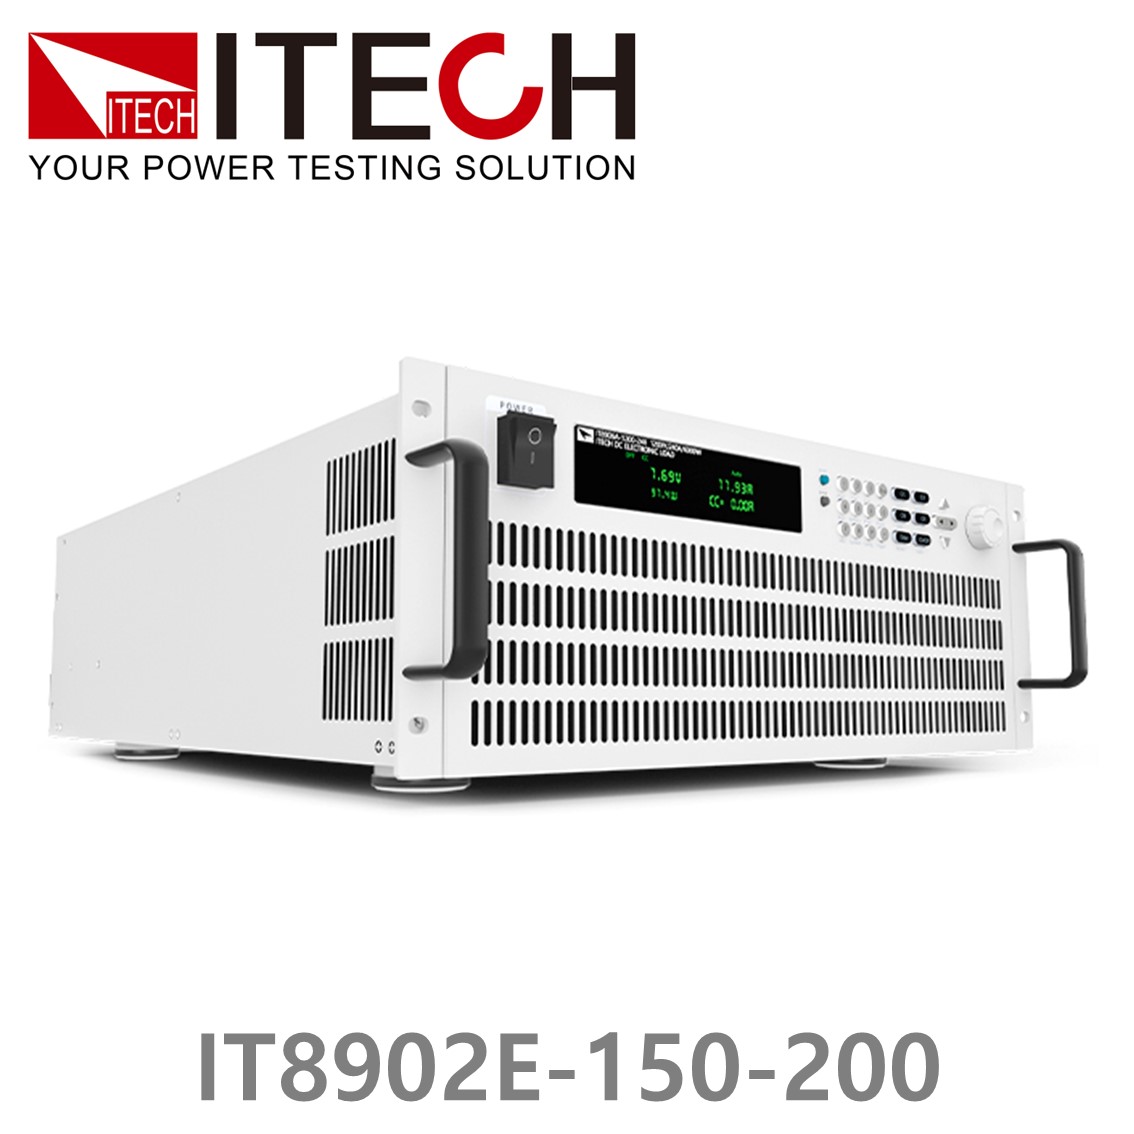 [ ITECH ] IT8902E-150-200  고성능 고전력 DC 전자로드 150V/200A/2kW (4U)